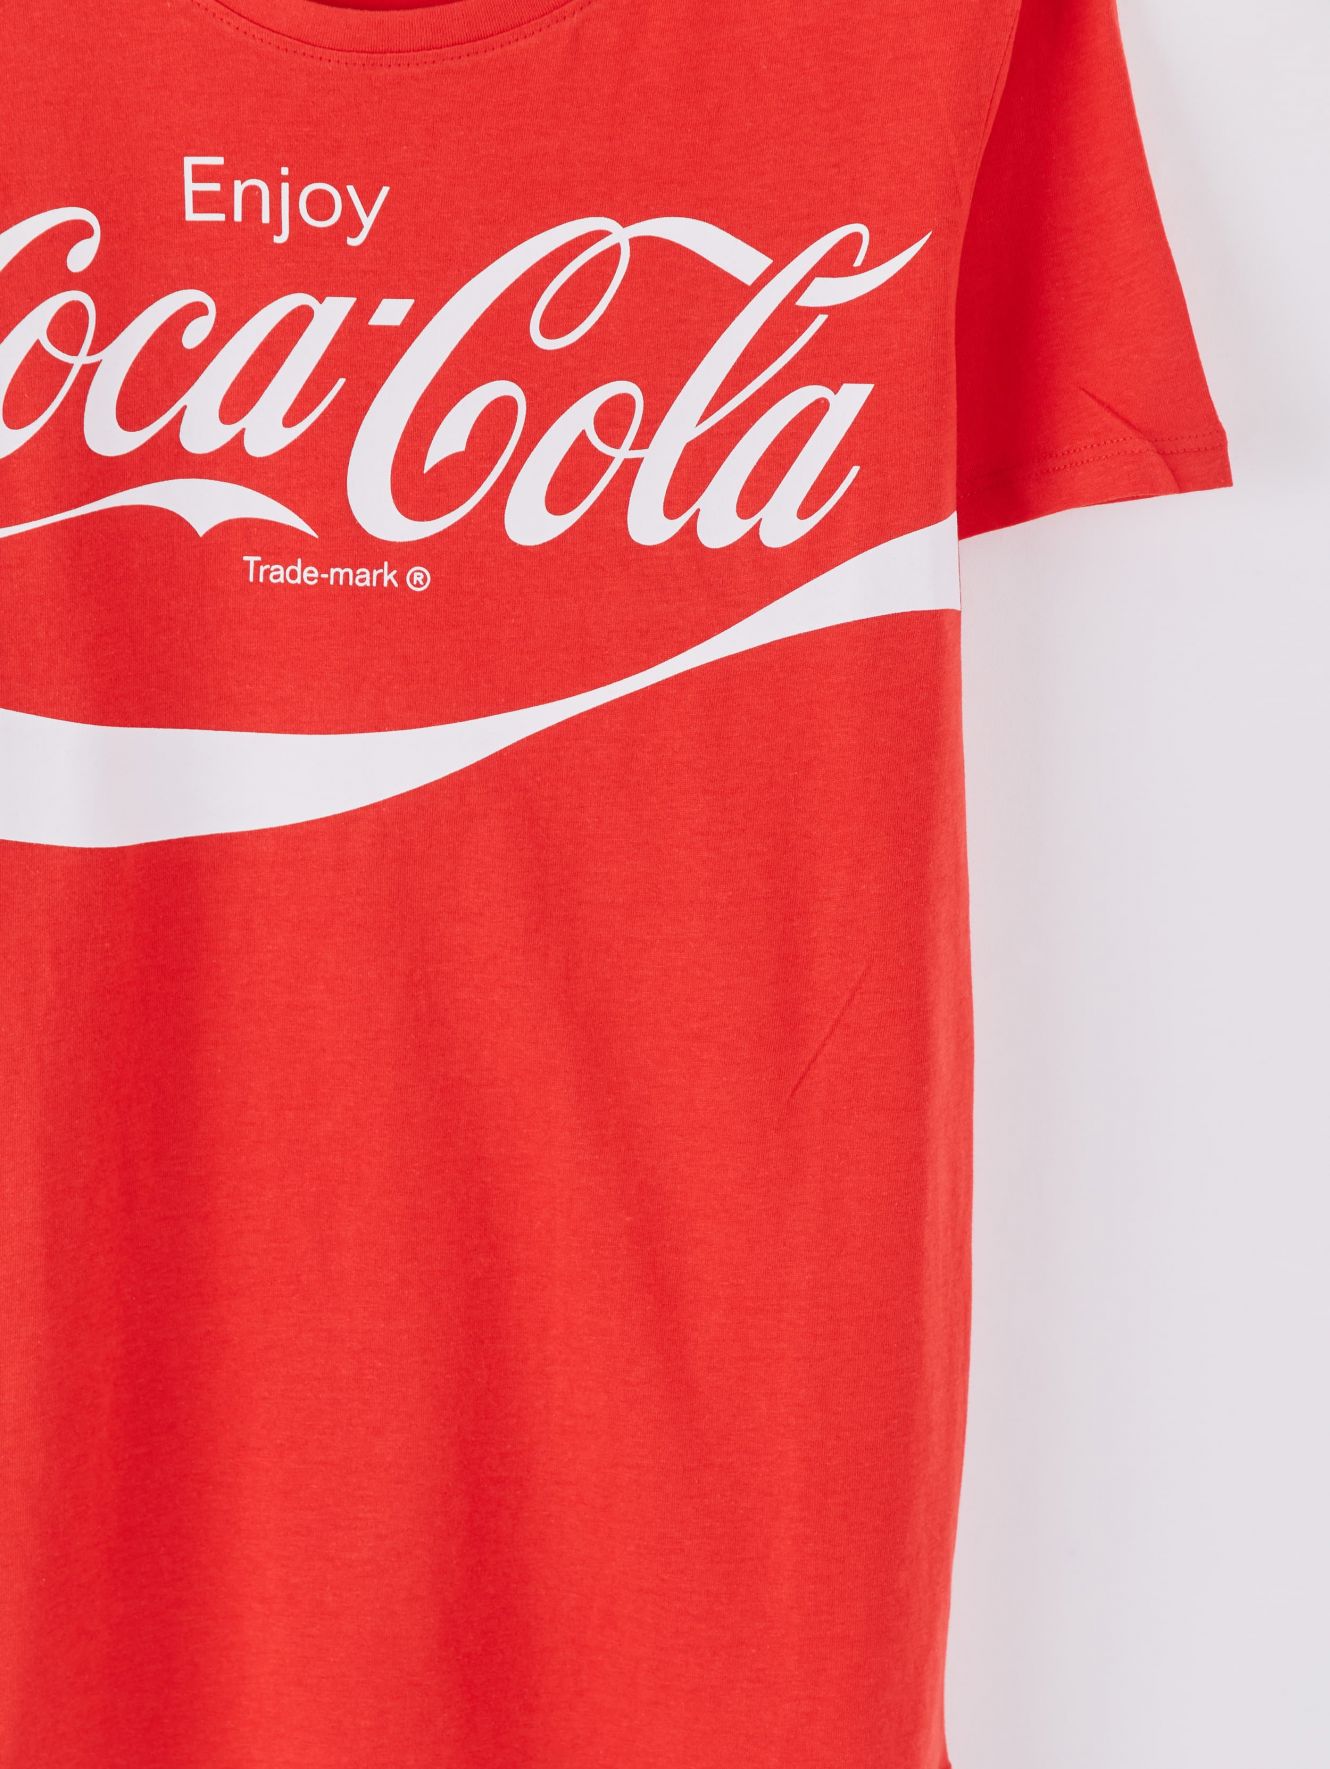 red coca cola shirt